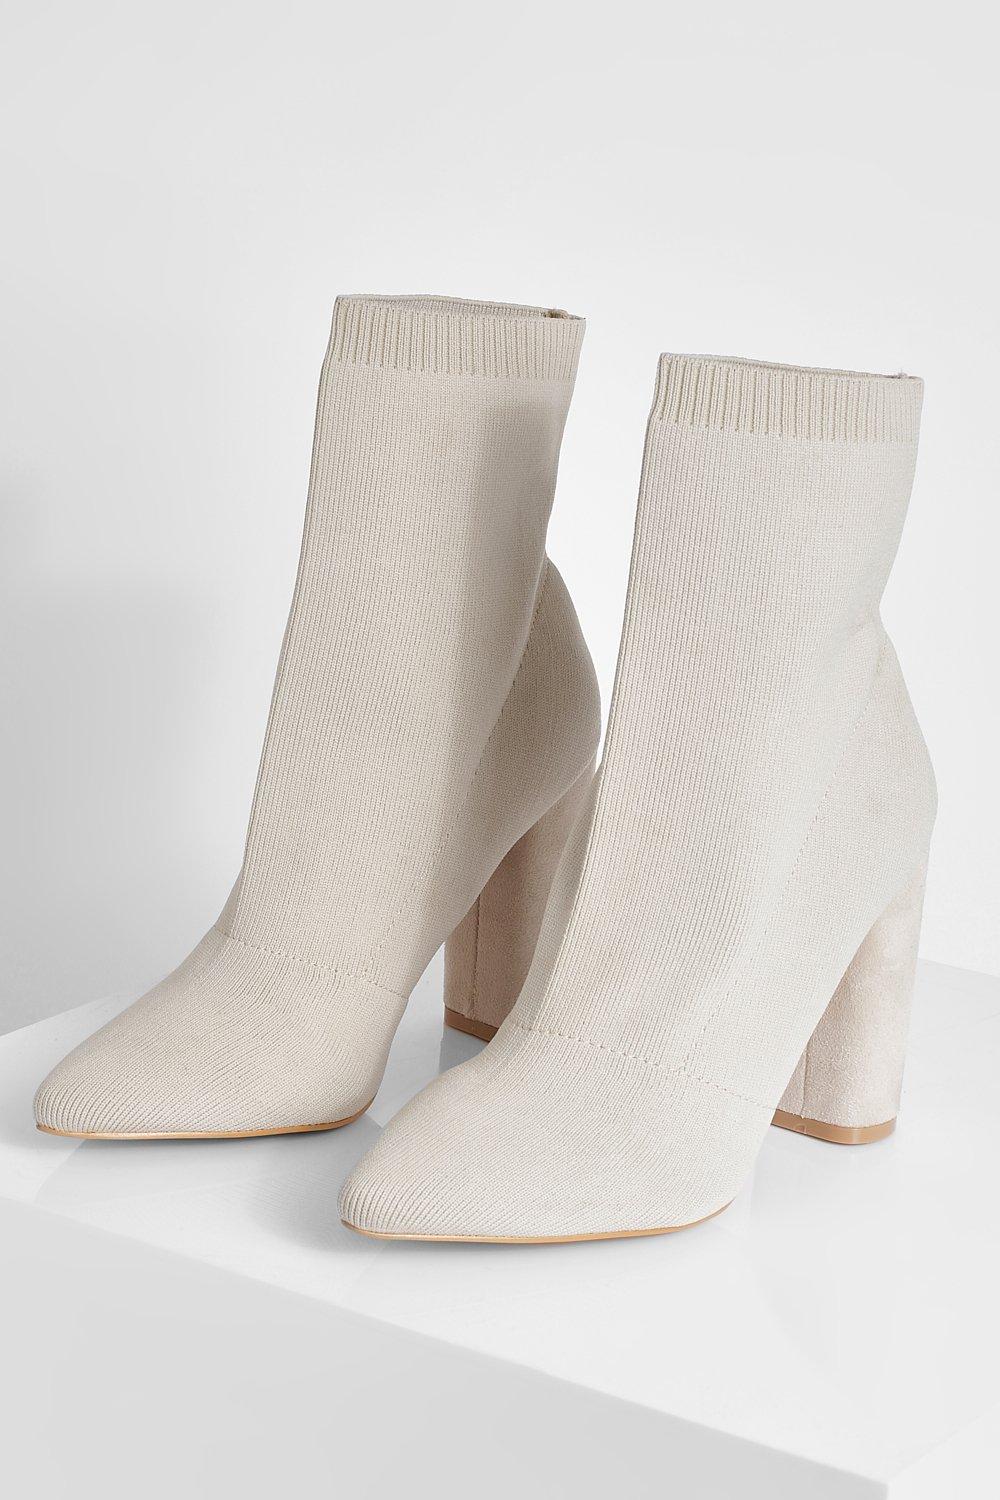 Botas Calcetín Elásticas Con Tacón Grueso de Boohoo de color Neutro Mujer Zapatos de Botas de Botas de tacón y de tacón alto 